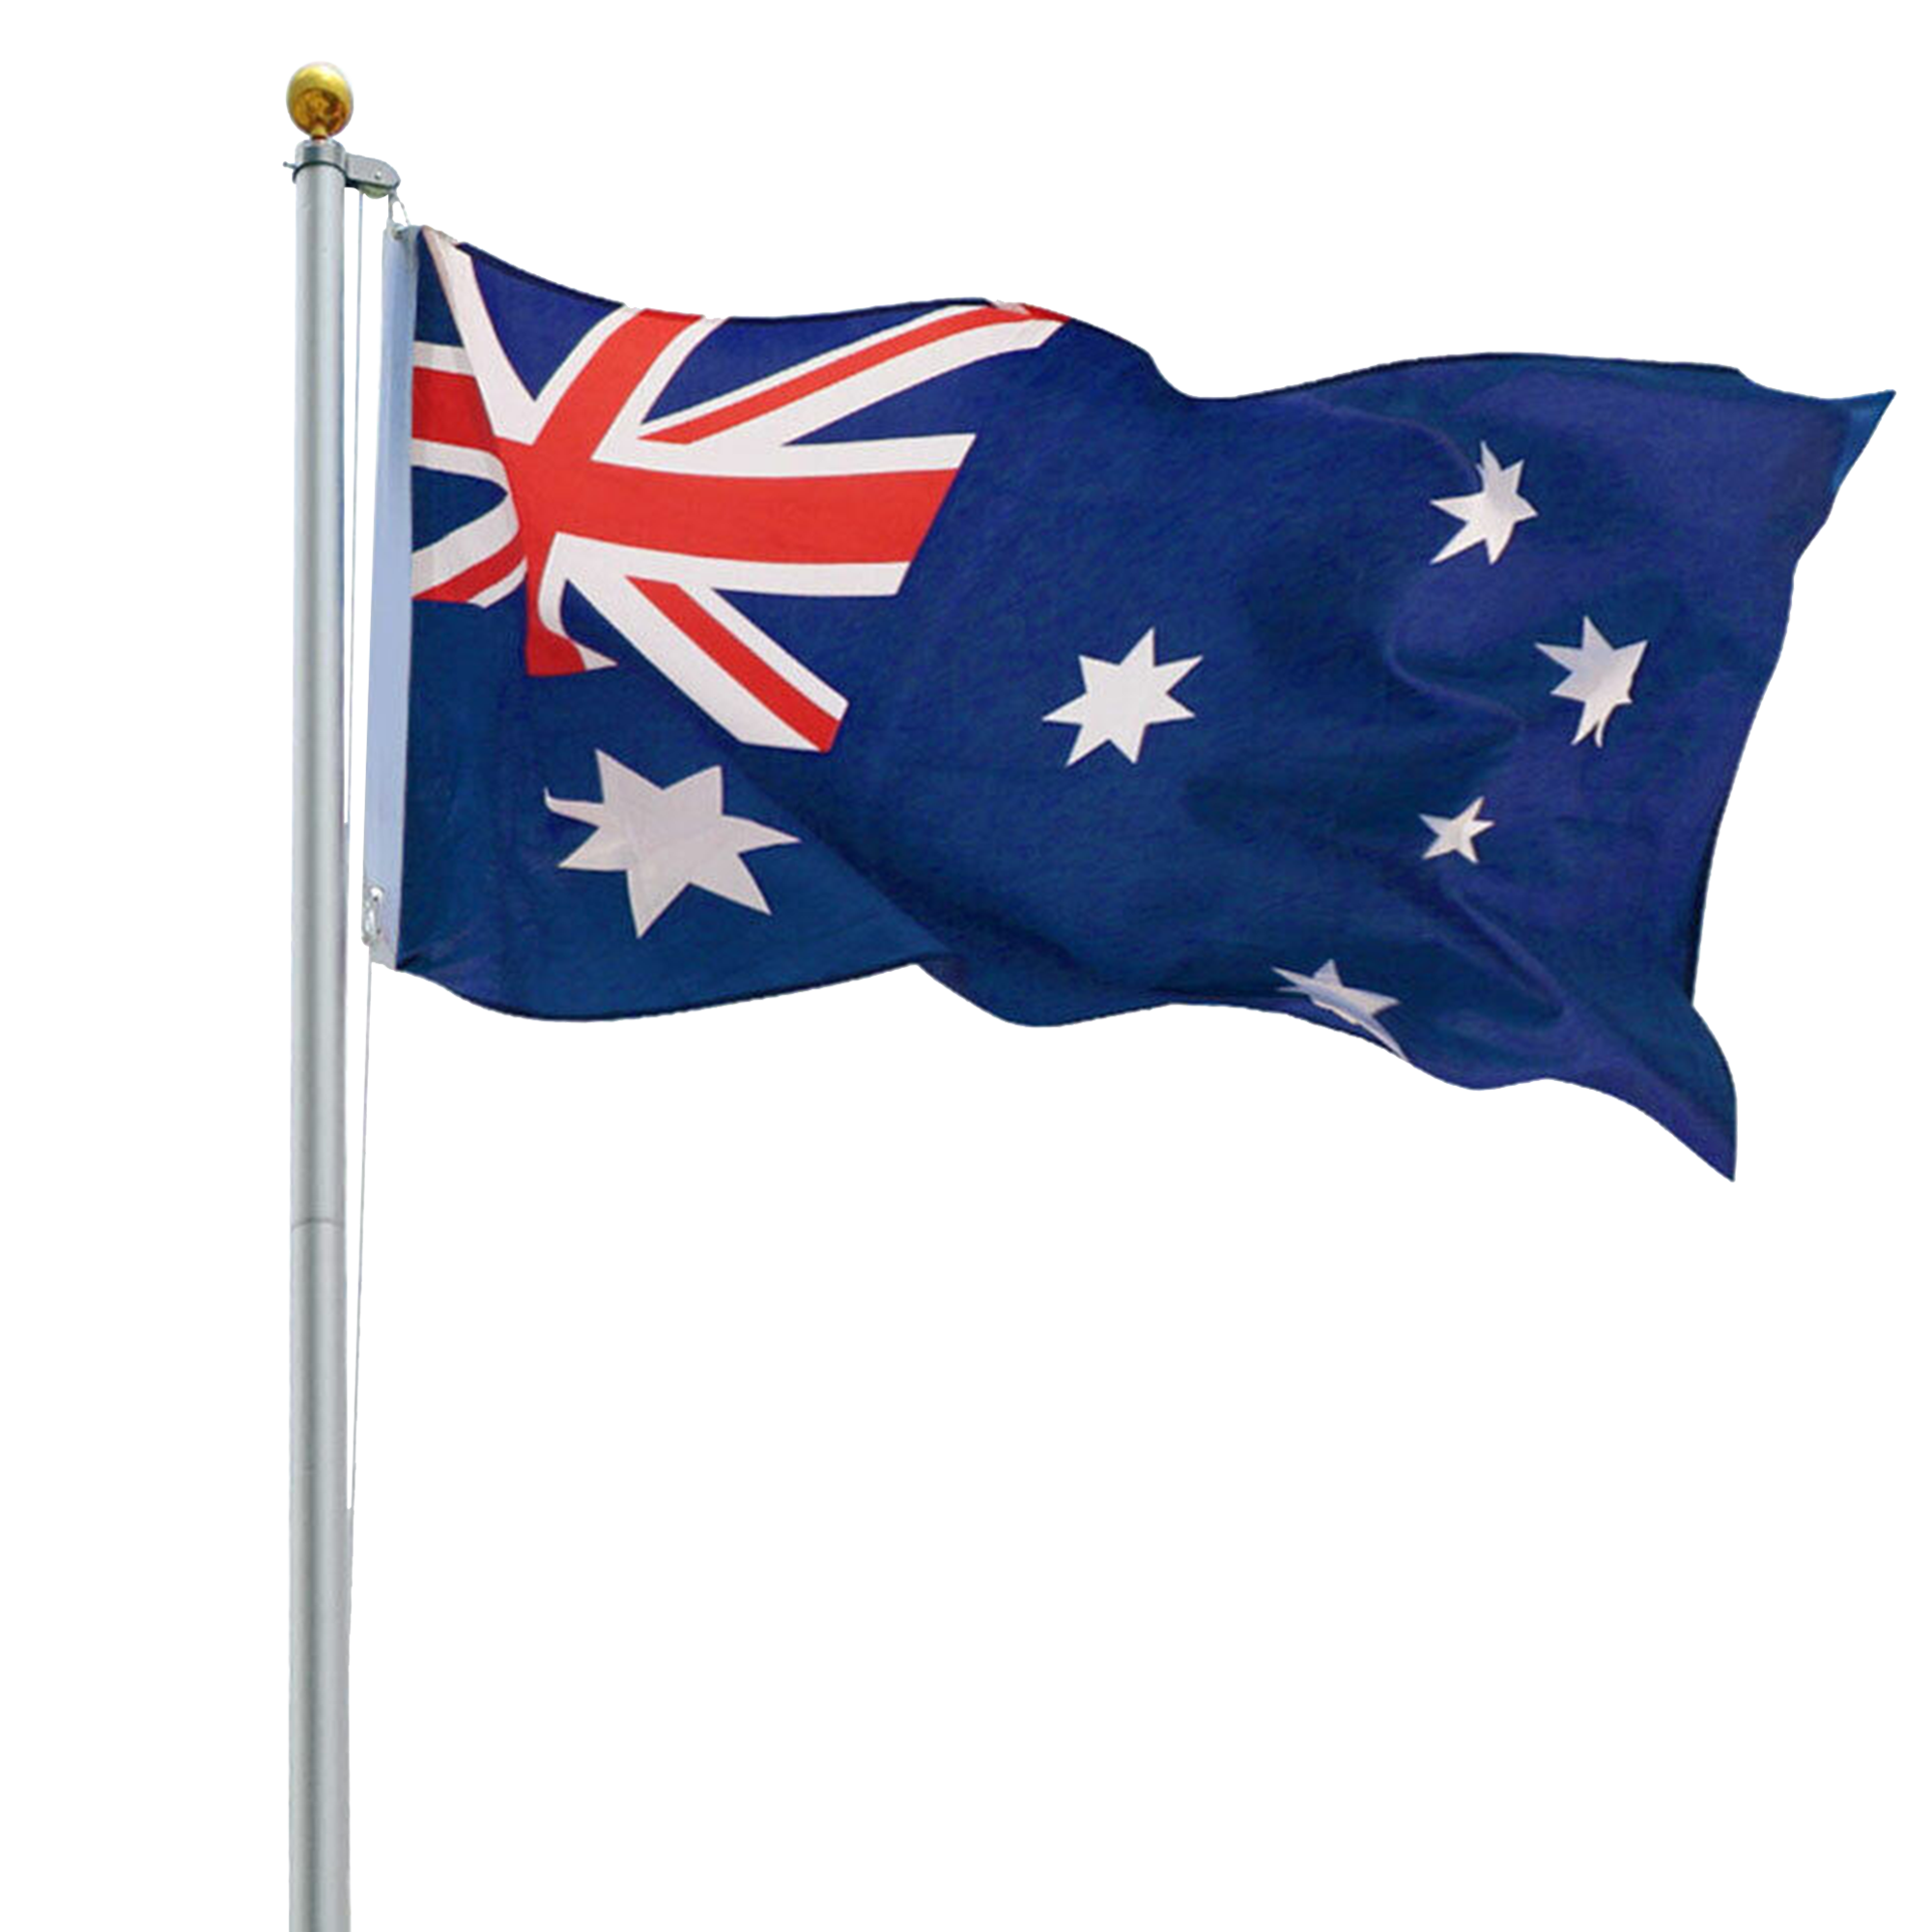 6.0m Flag Pole Full Set / Kit w Australian Flag